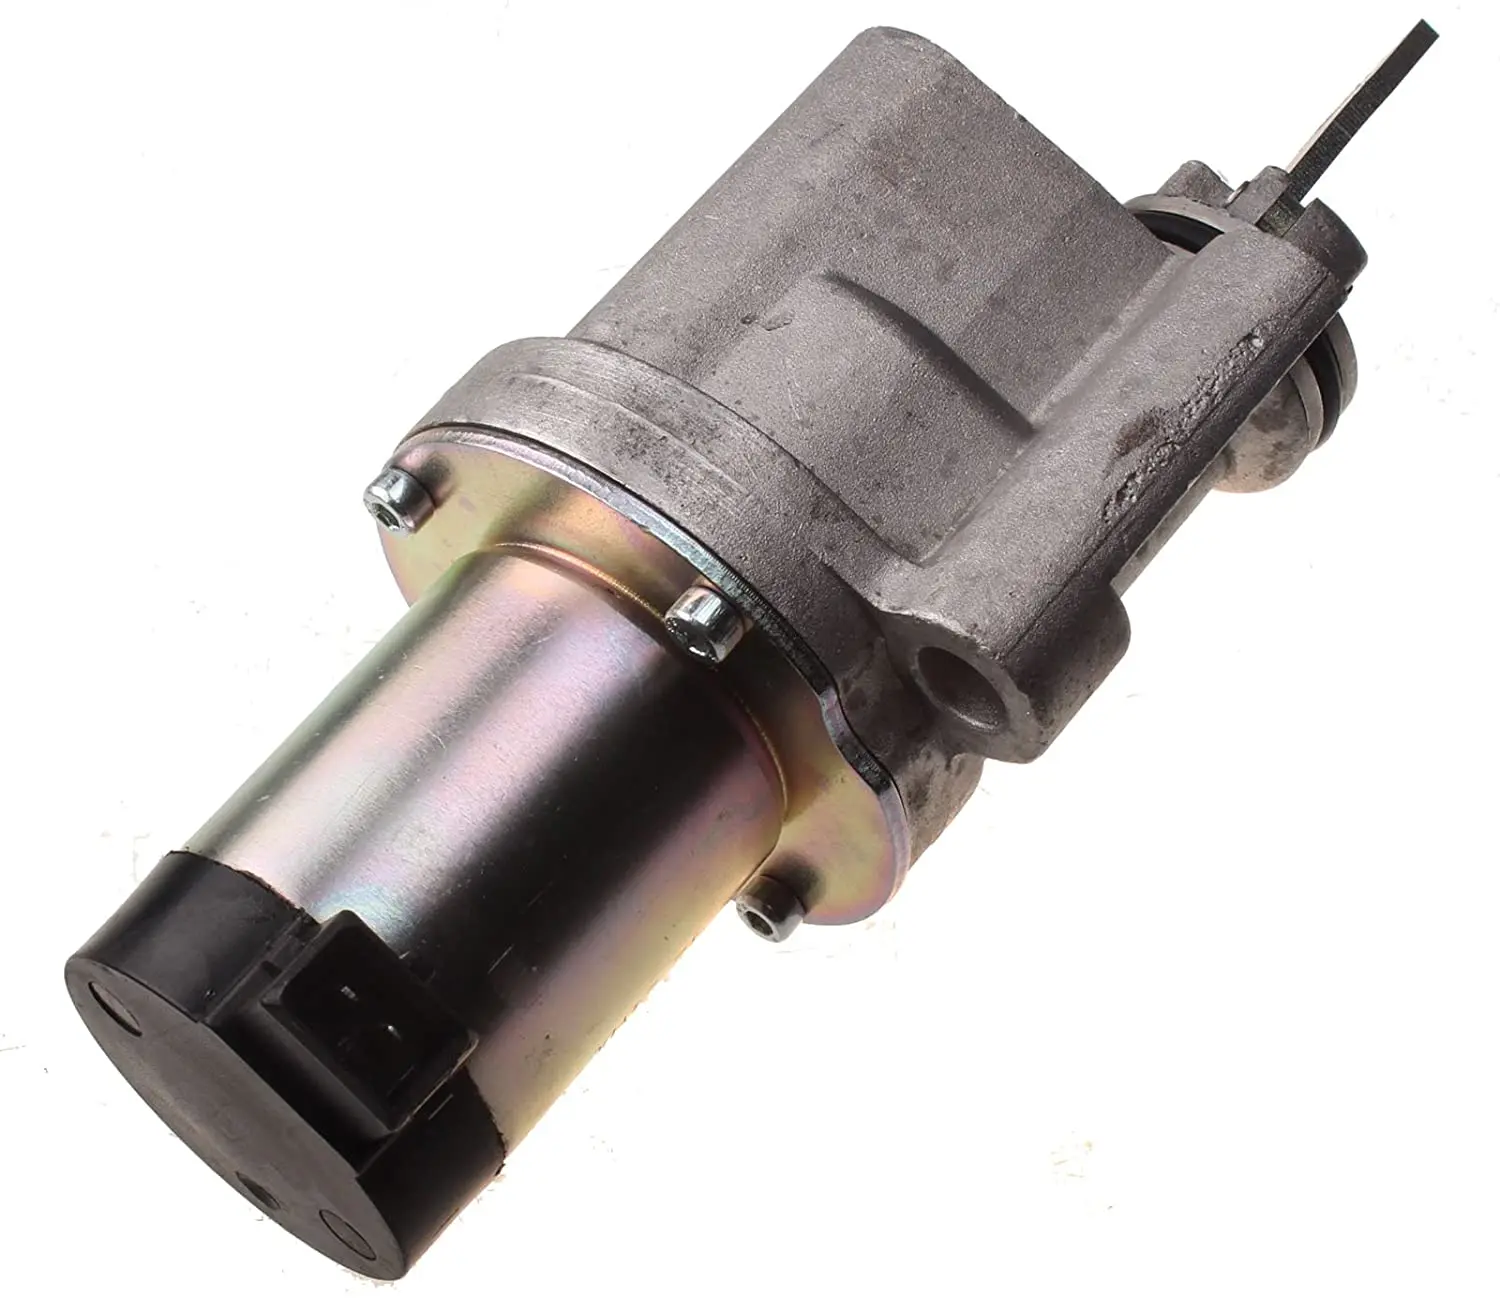 

Клапан Holdwell Электромагнит отключения подачи топлива, 04513019, 0451, 3019, 24 В, подходит для двигателя Deutz